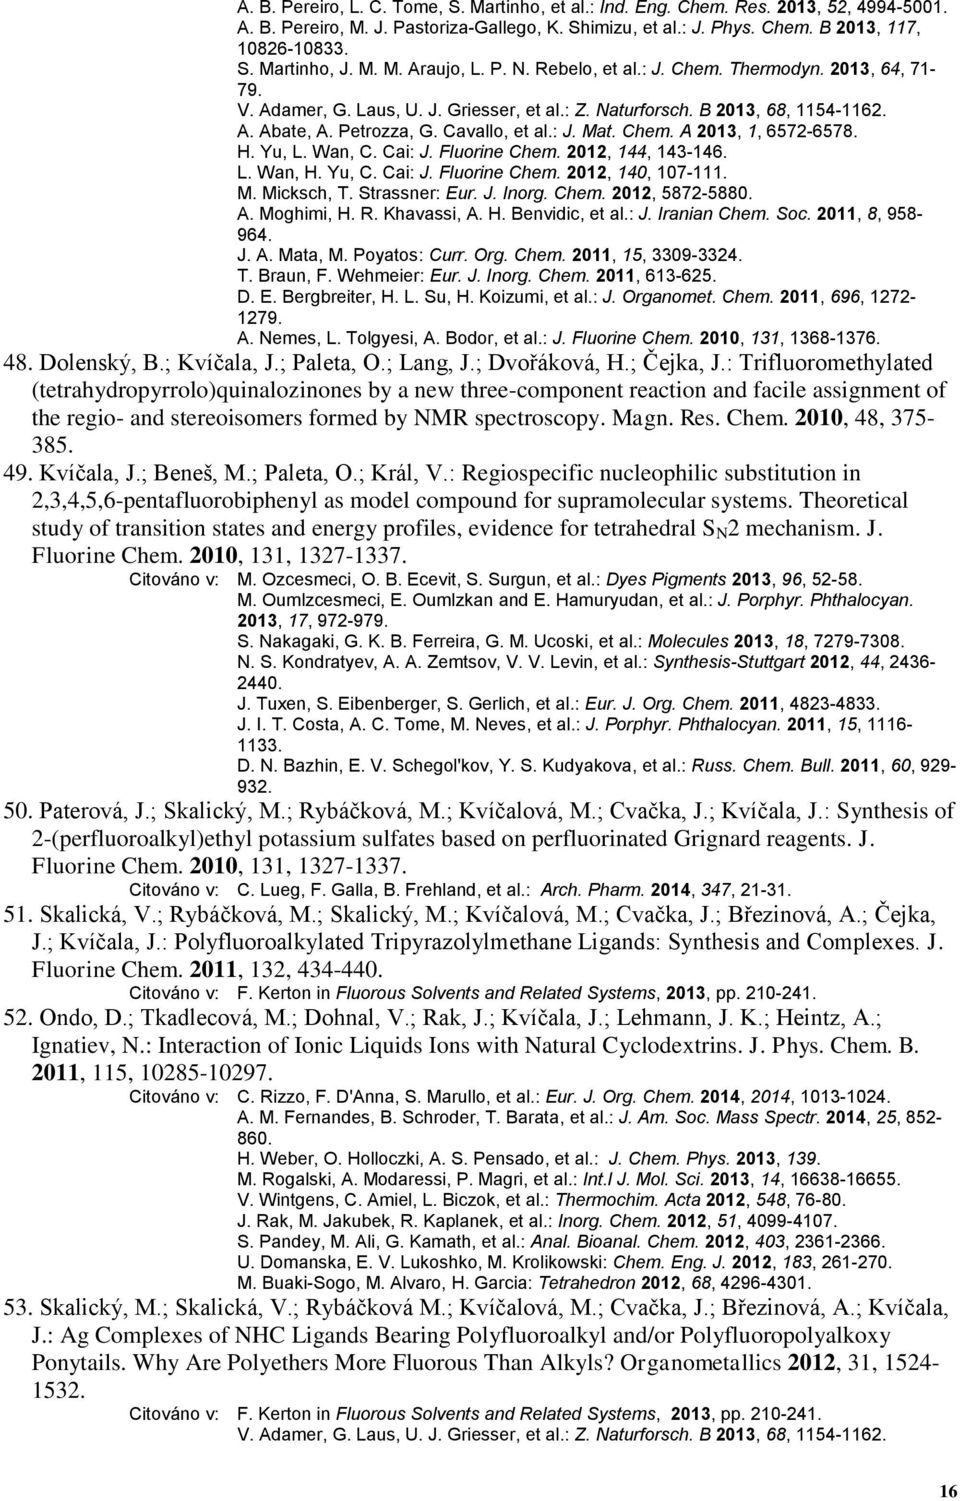 : J. Mat. Chem. A 2013, 1, 6572-6578. H. Yu, L. Wan, C. Cai: J. Fluorine Chem. 2012, 144, 143-146. L. Wan, H. Yu, C. Cai: J. Fluorine Chem. 2012, 140, 107-111. M. Micksch, T. Strassner: Eur. J. Inorg.